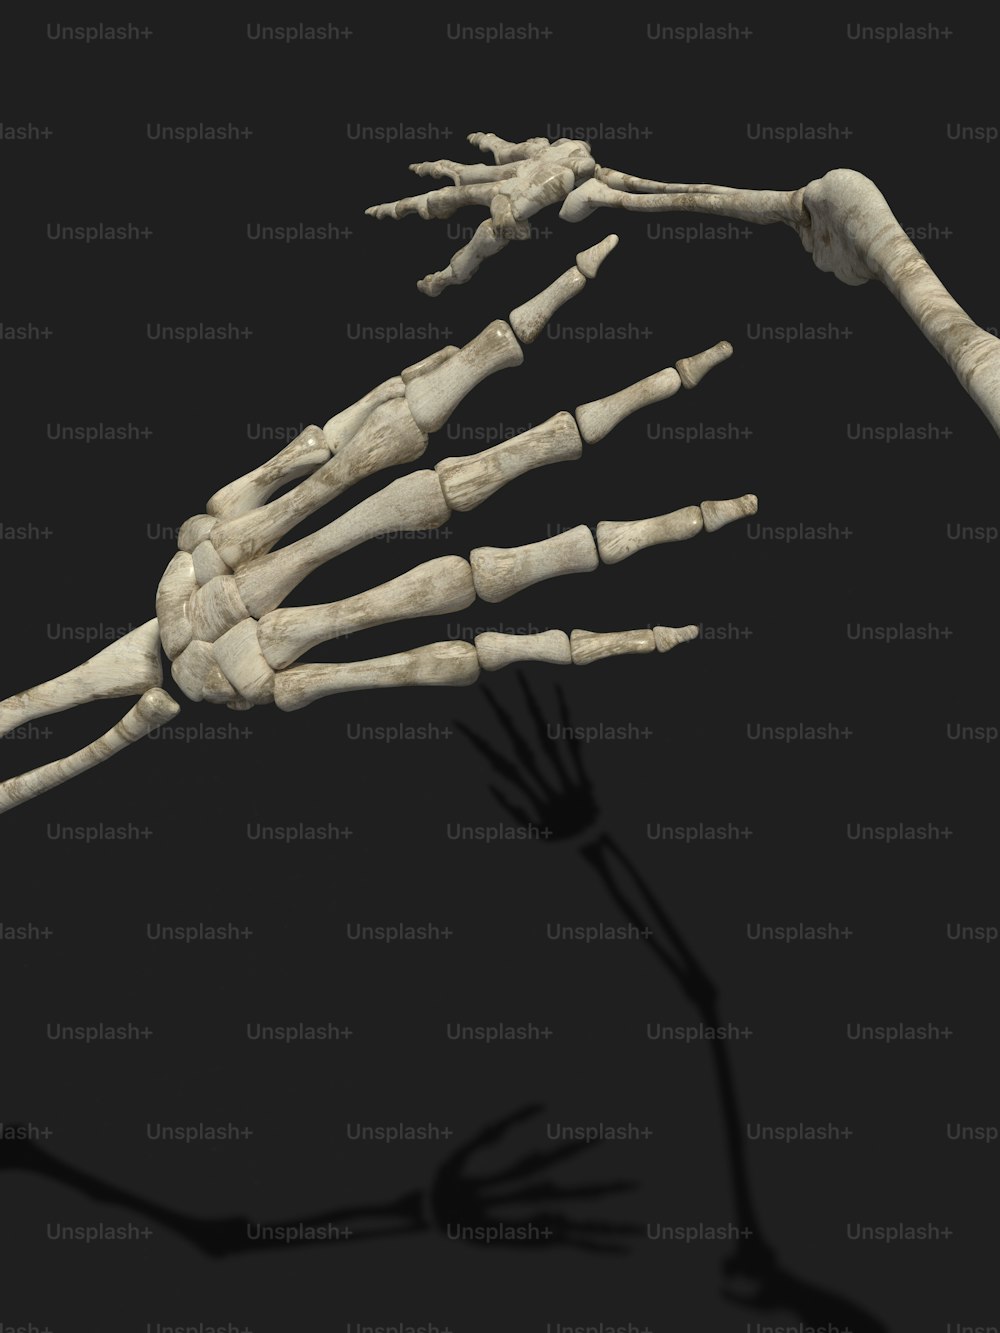 Le squelette d’une personne est montré dans cette image